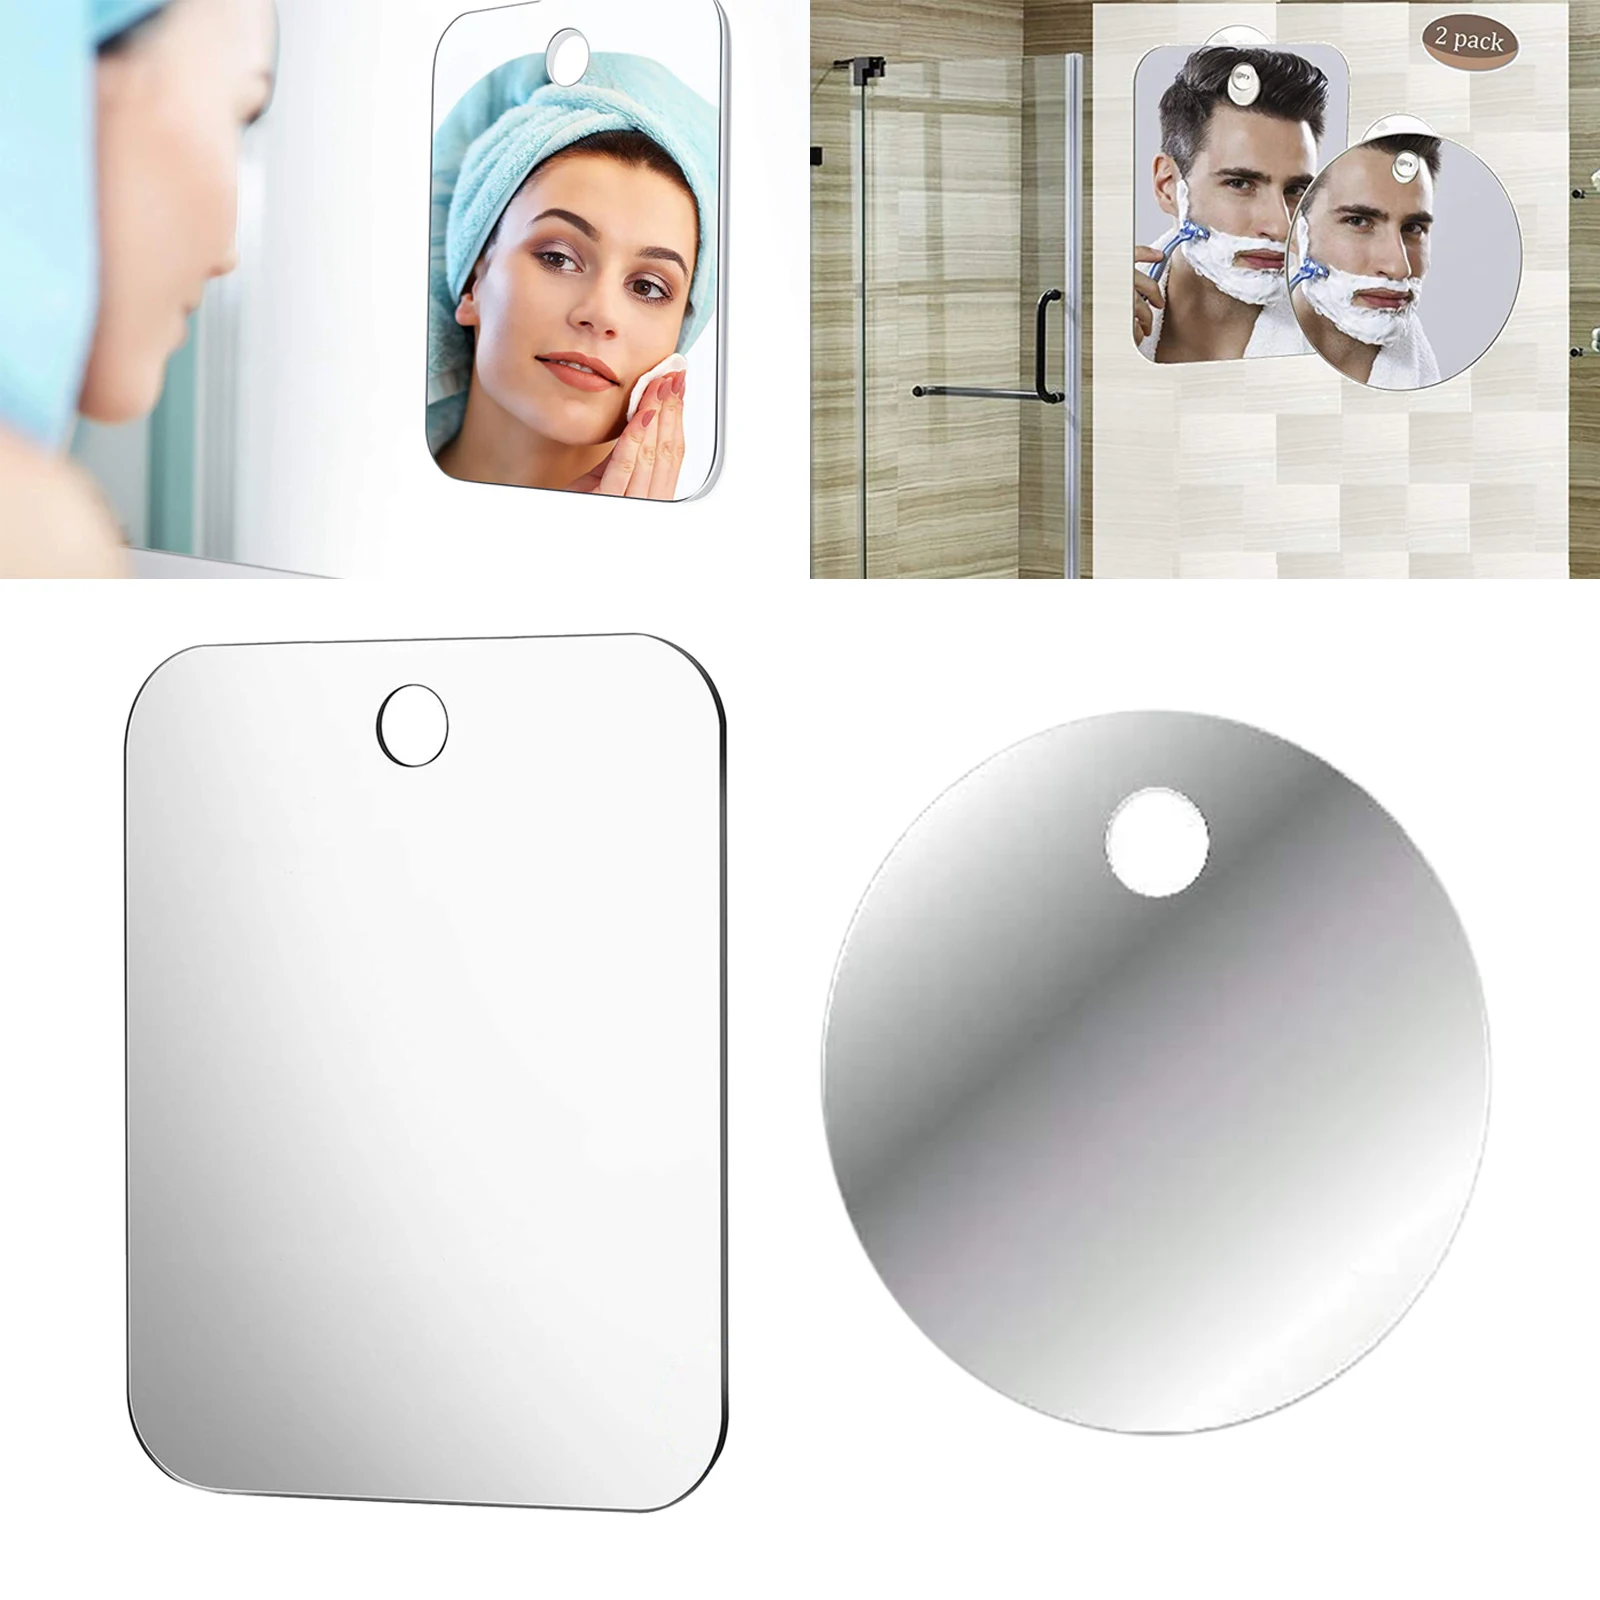 Fogless Shower Mirror for Shaving with Razor Hook, Anti-Fog Bathroom Shaving